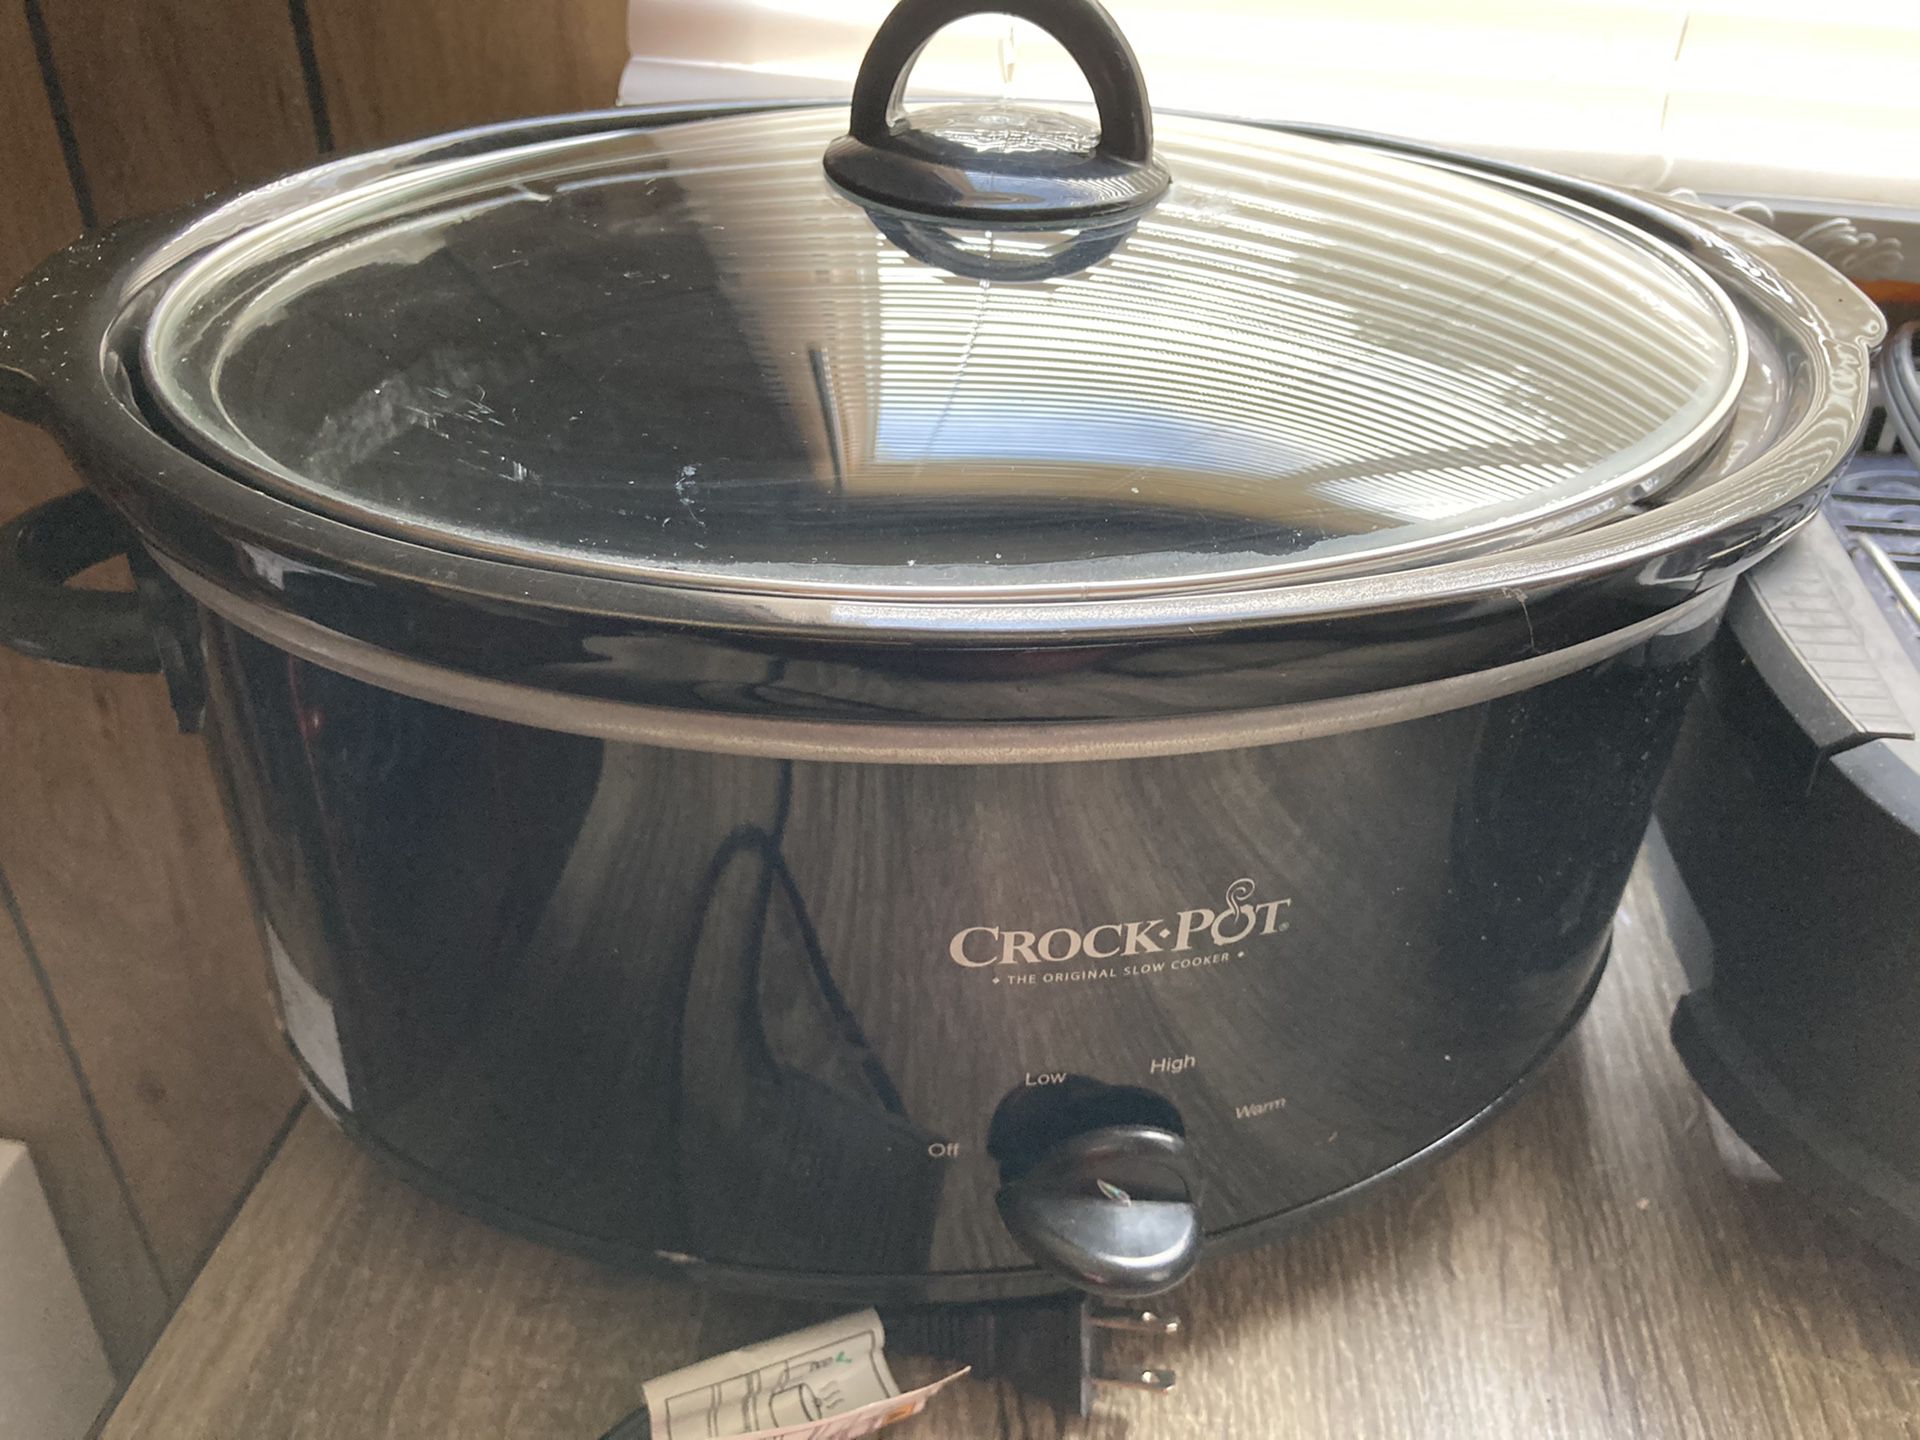 Crock-Pot 8 Quart Slow Cooker Black